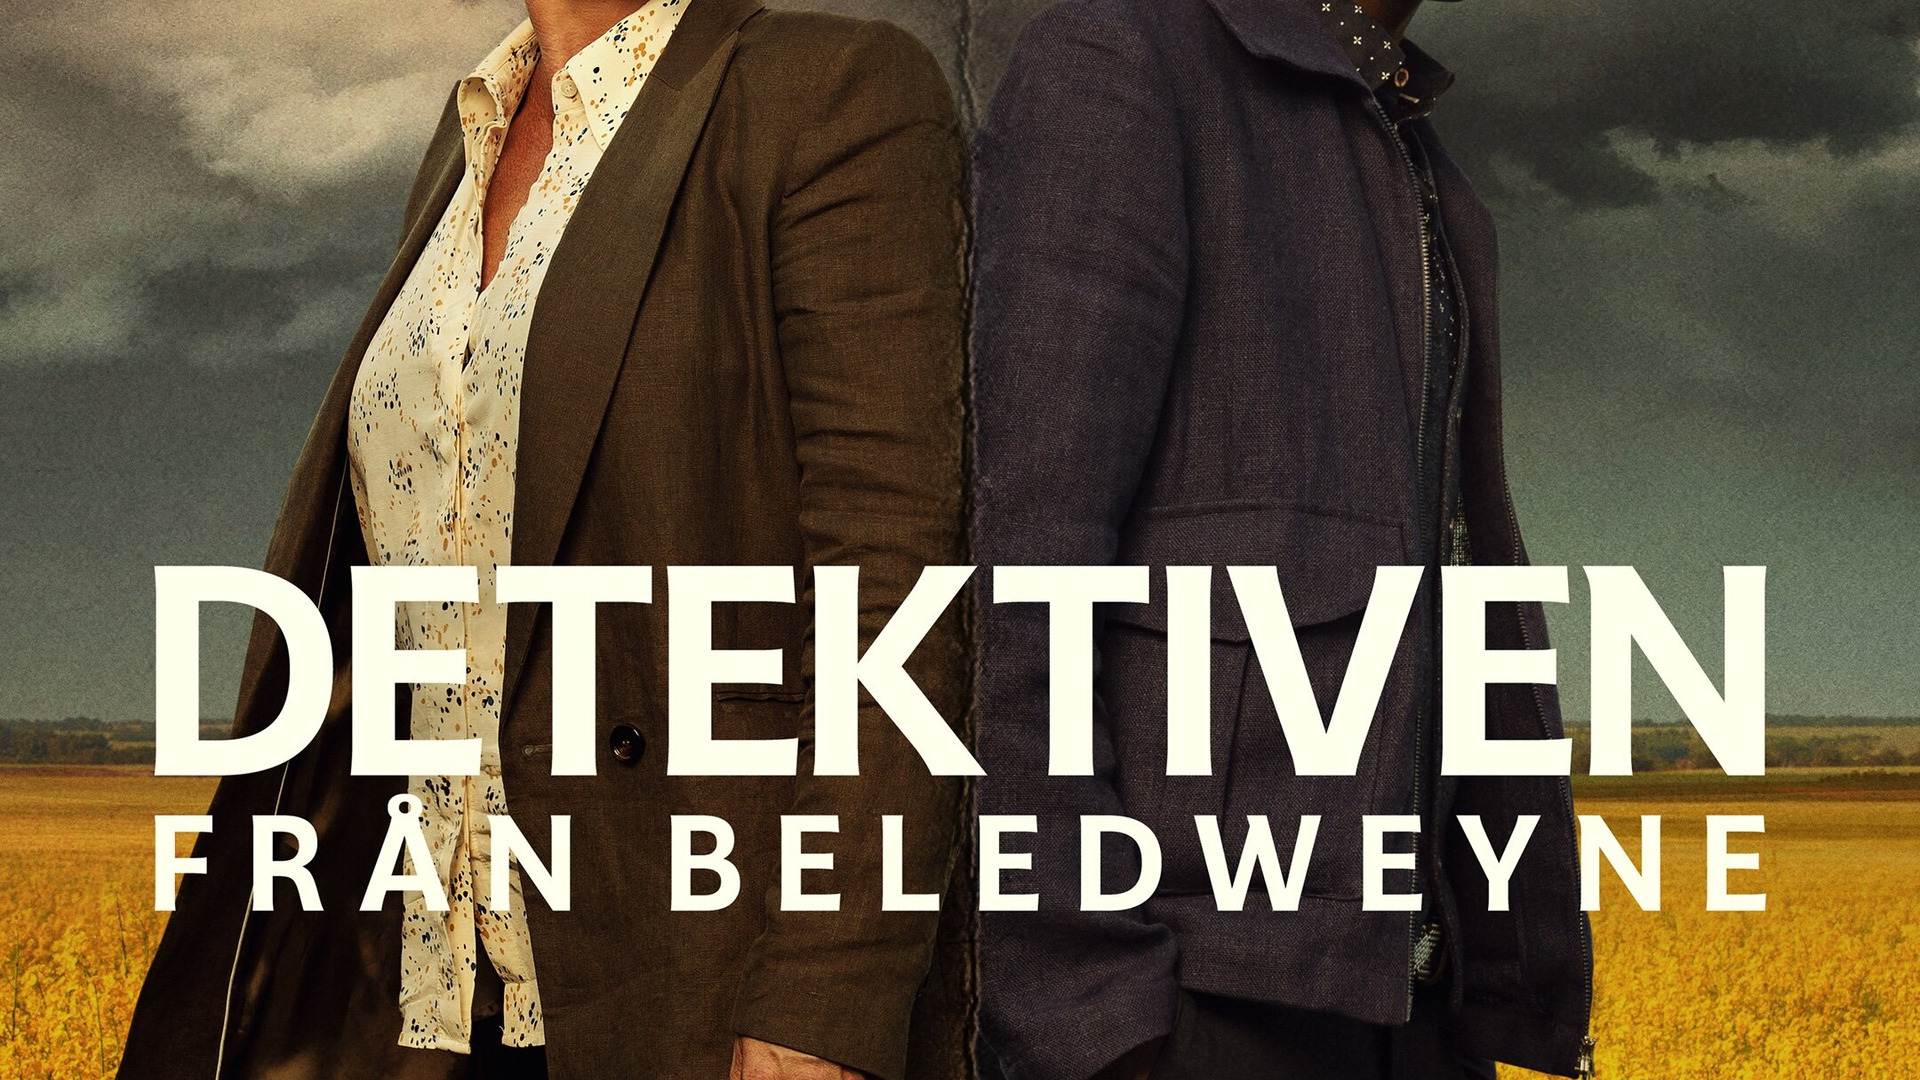 Show Detektiven från Beledweyne